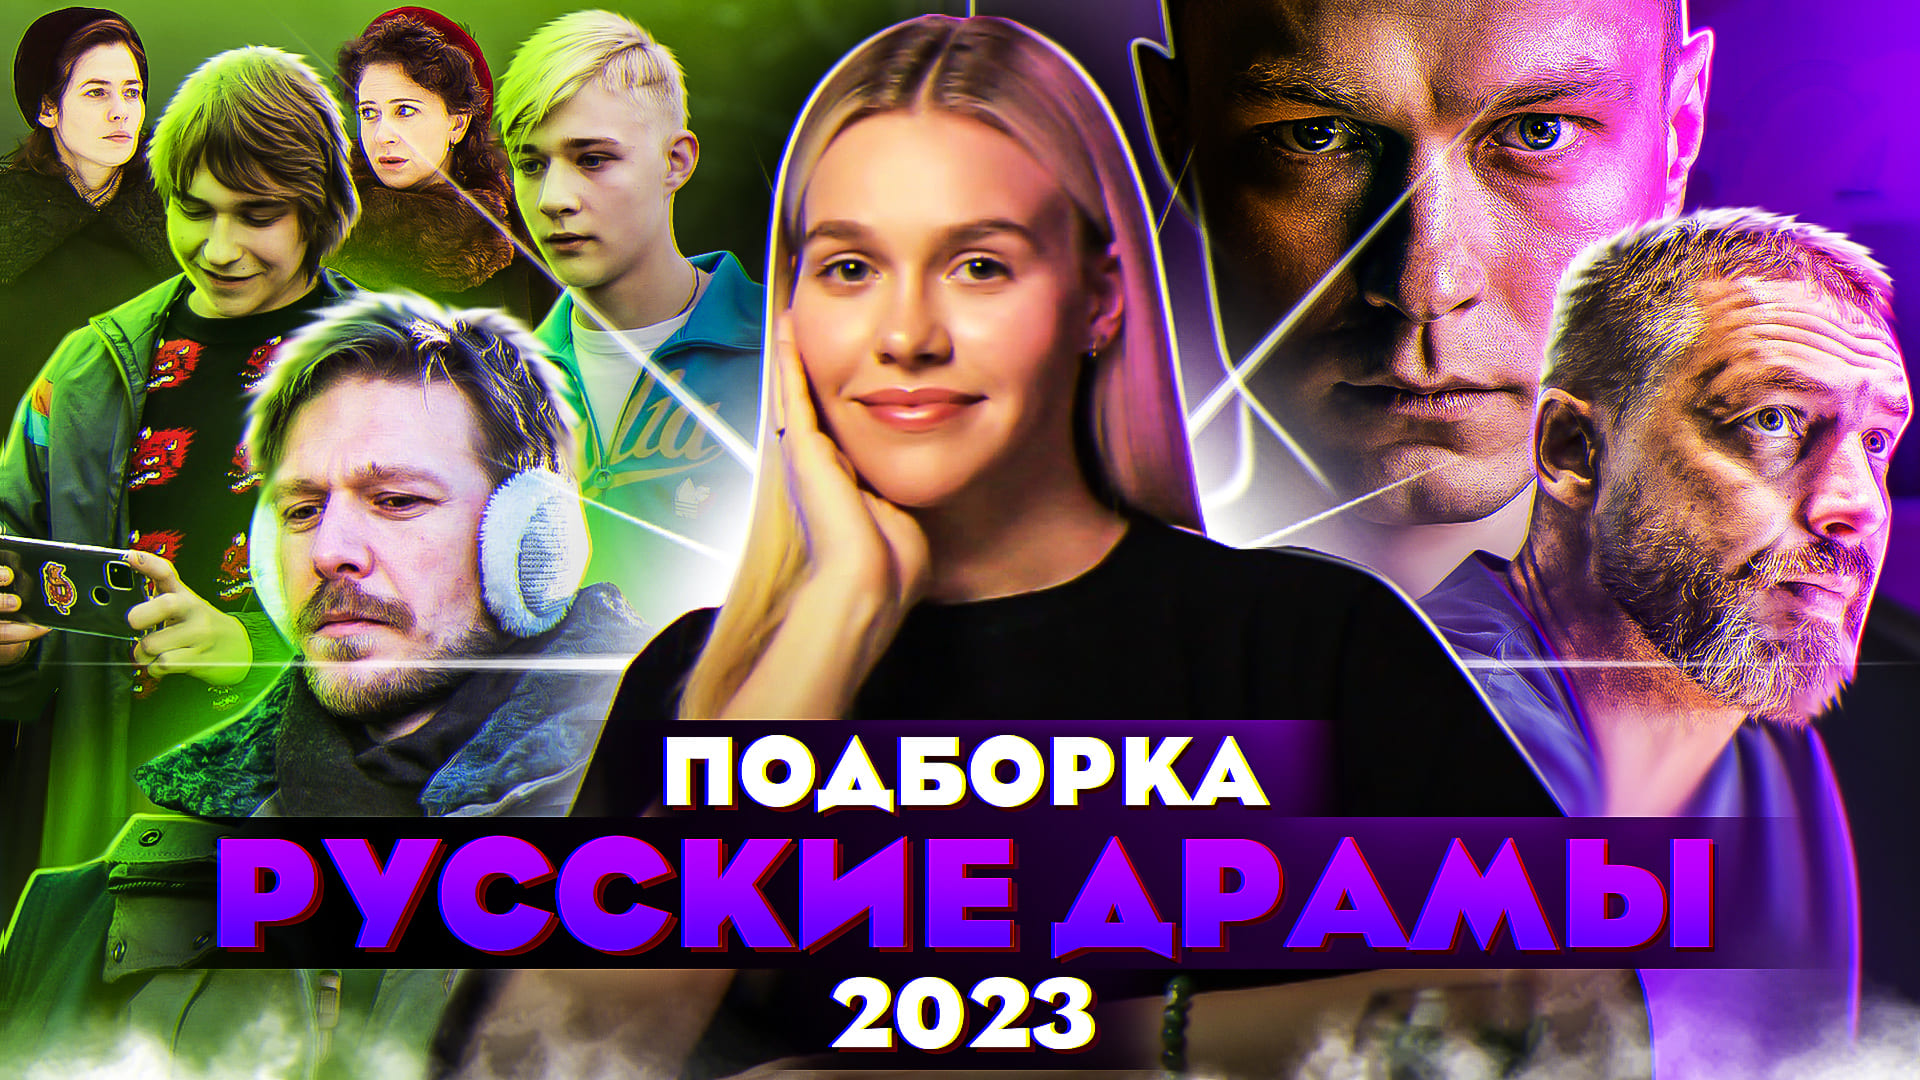 Драмы 2023 рейтинг. Драмы 2023 года. Лучшие драмы 2023 русские. Самые популярные драмы 2023 года.